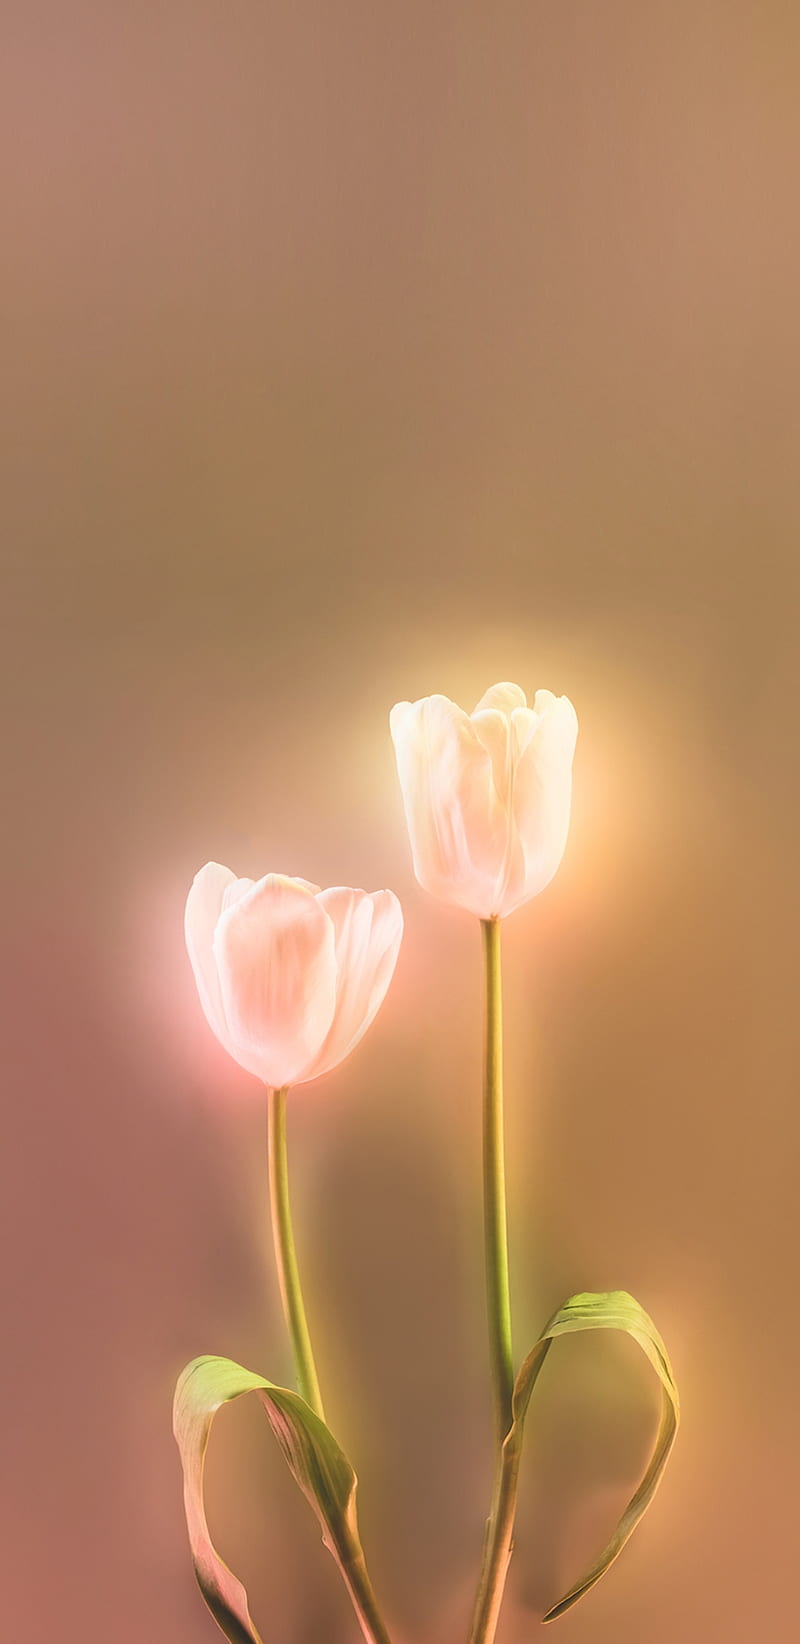 Hình nền điện thoại hoa tulip đẹp